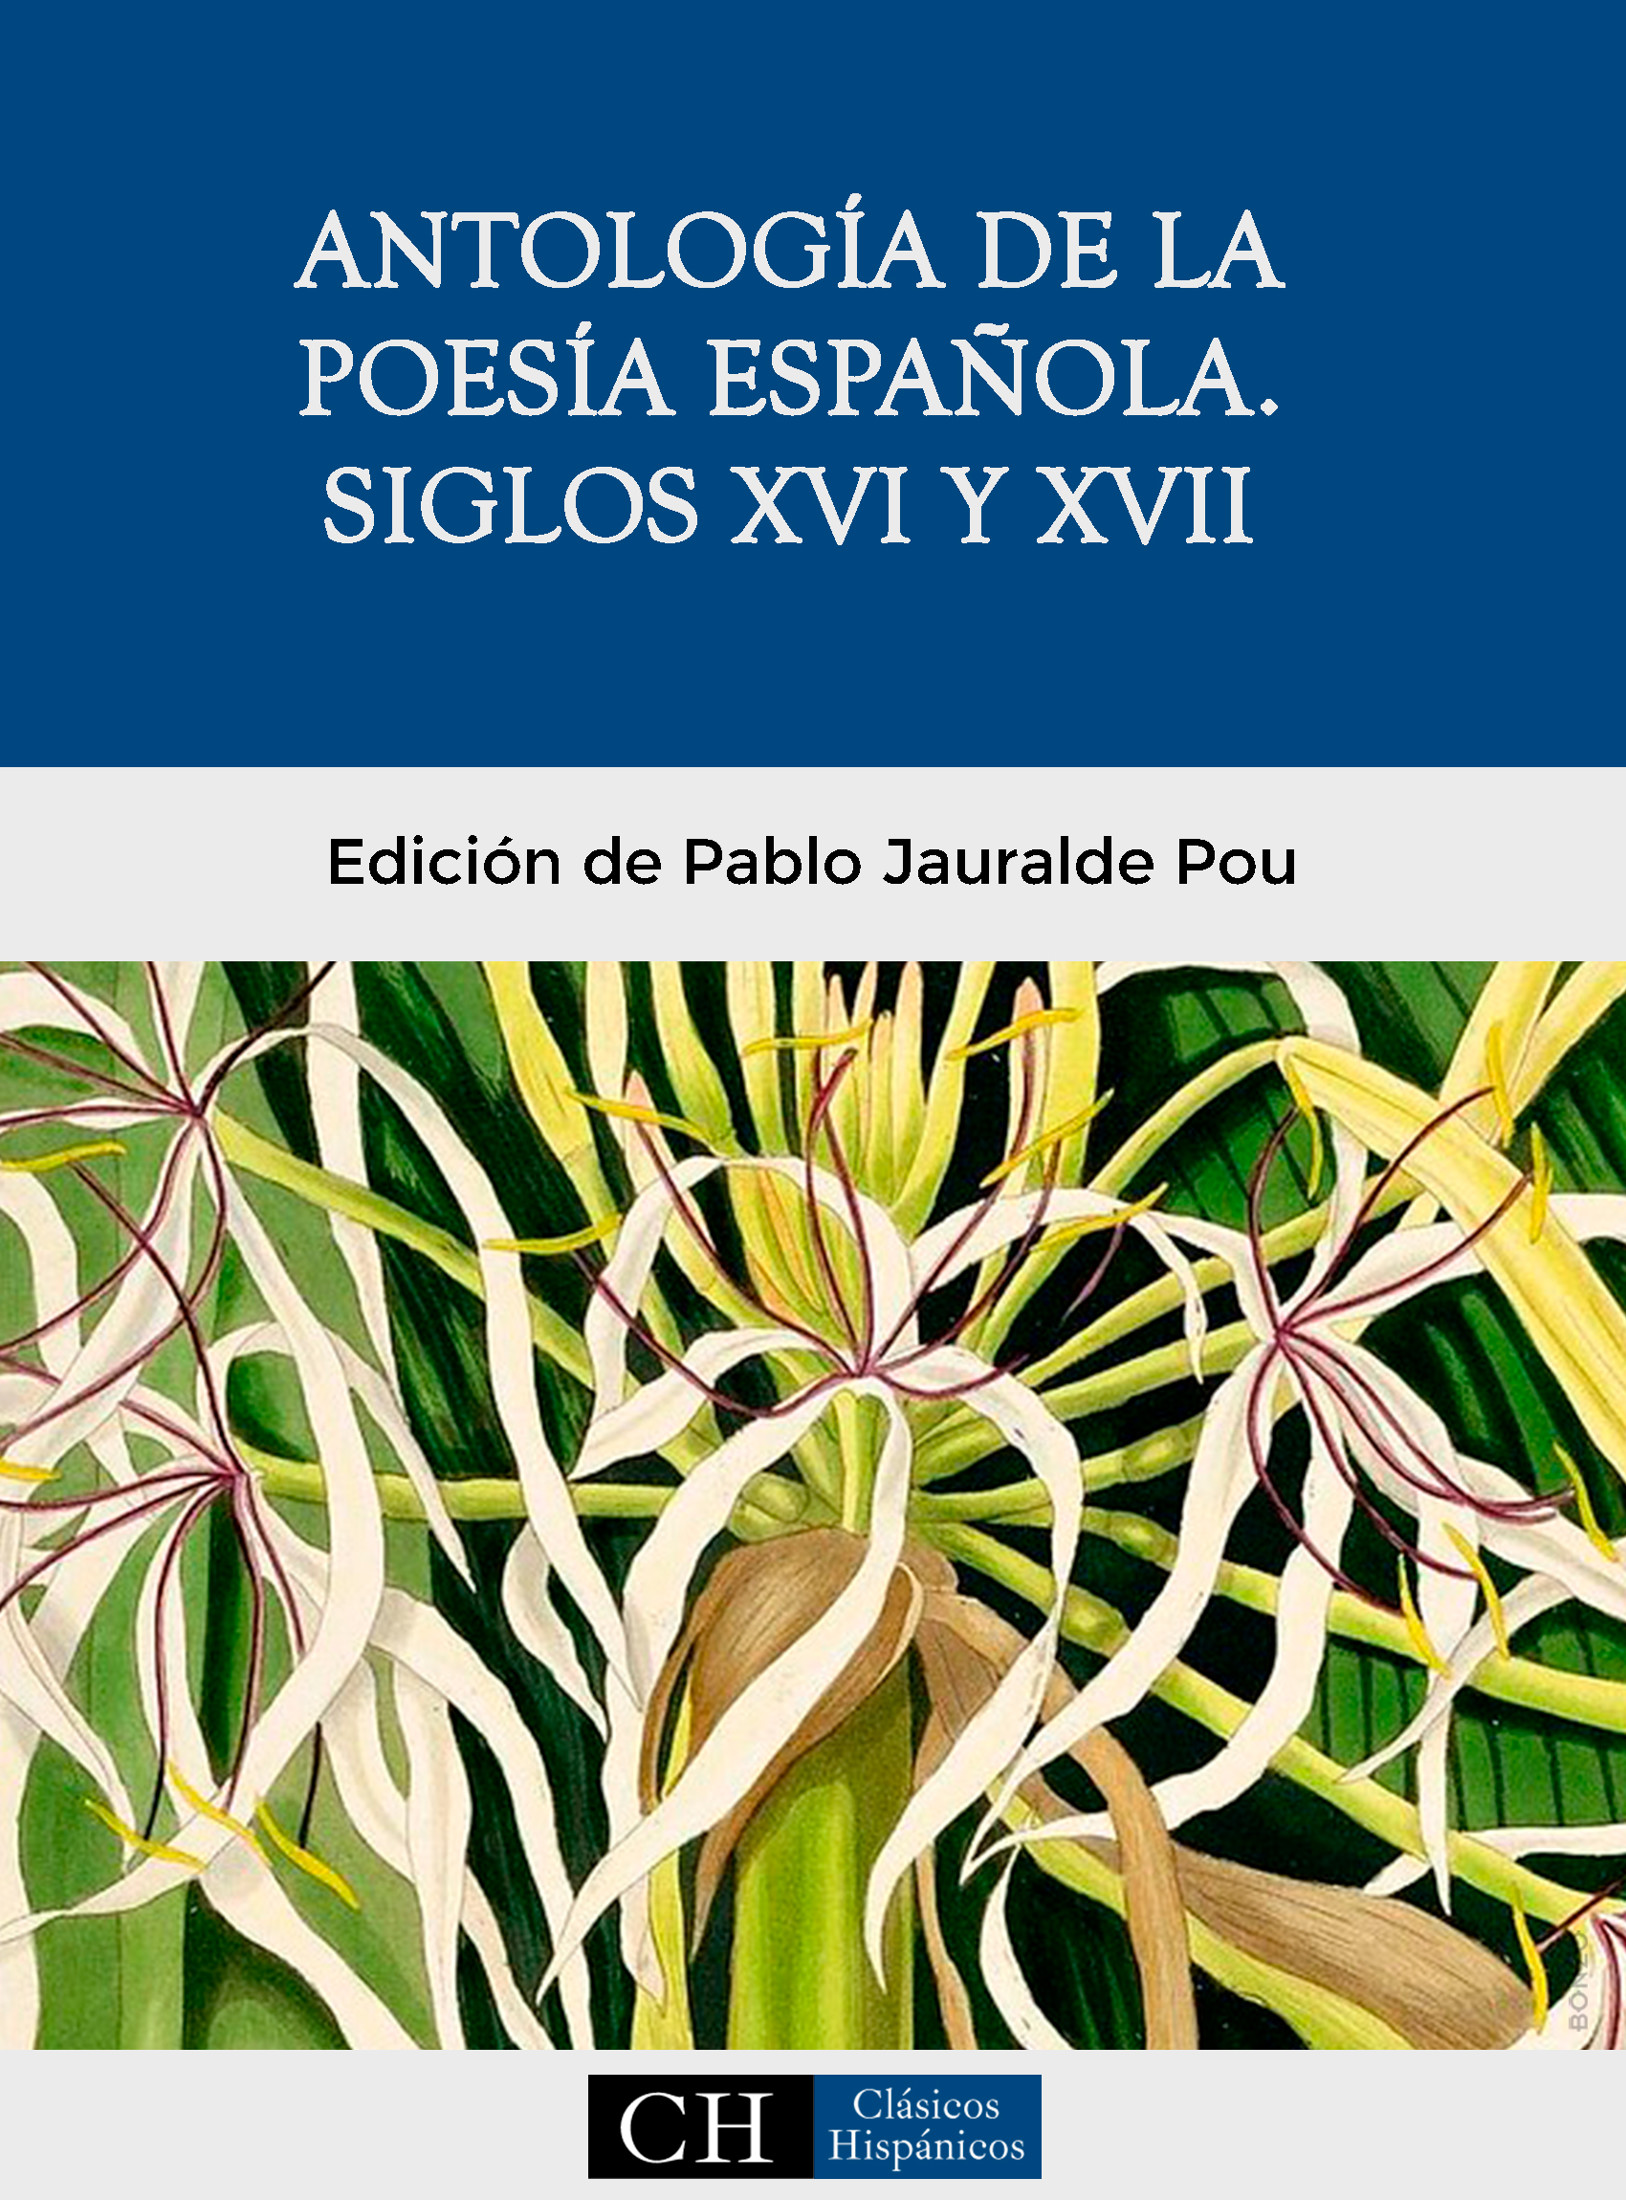 Imagen de portada del libro Antología de la poesía española. Siglos XVI y XVII